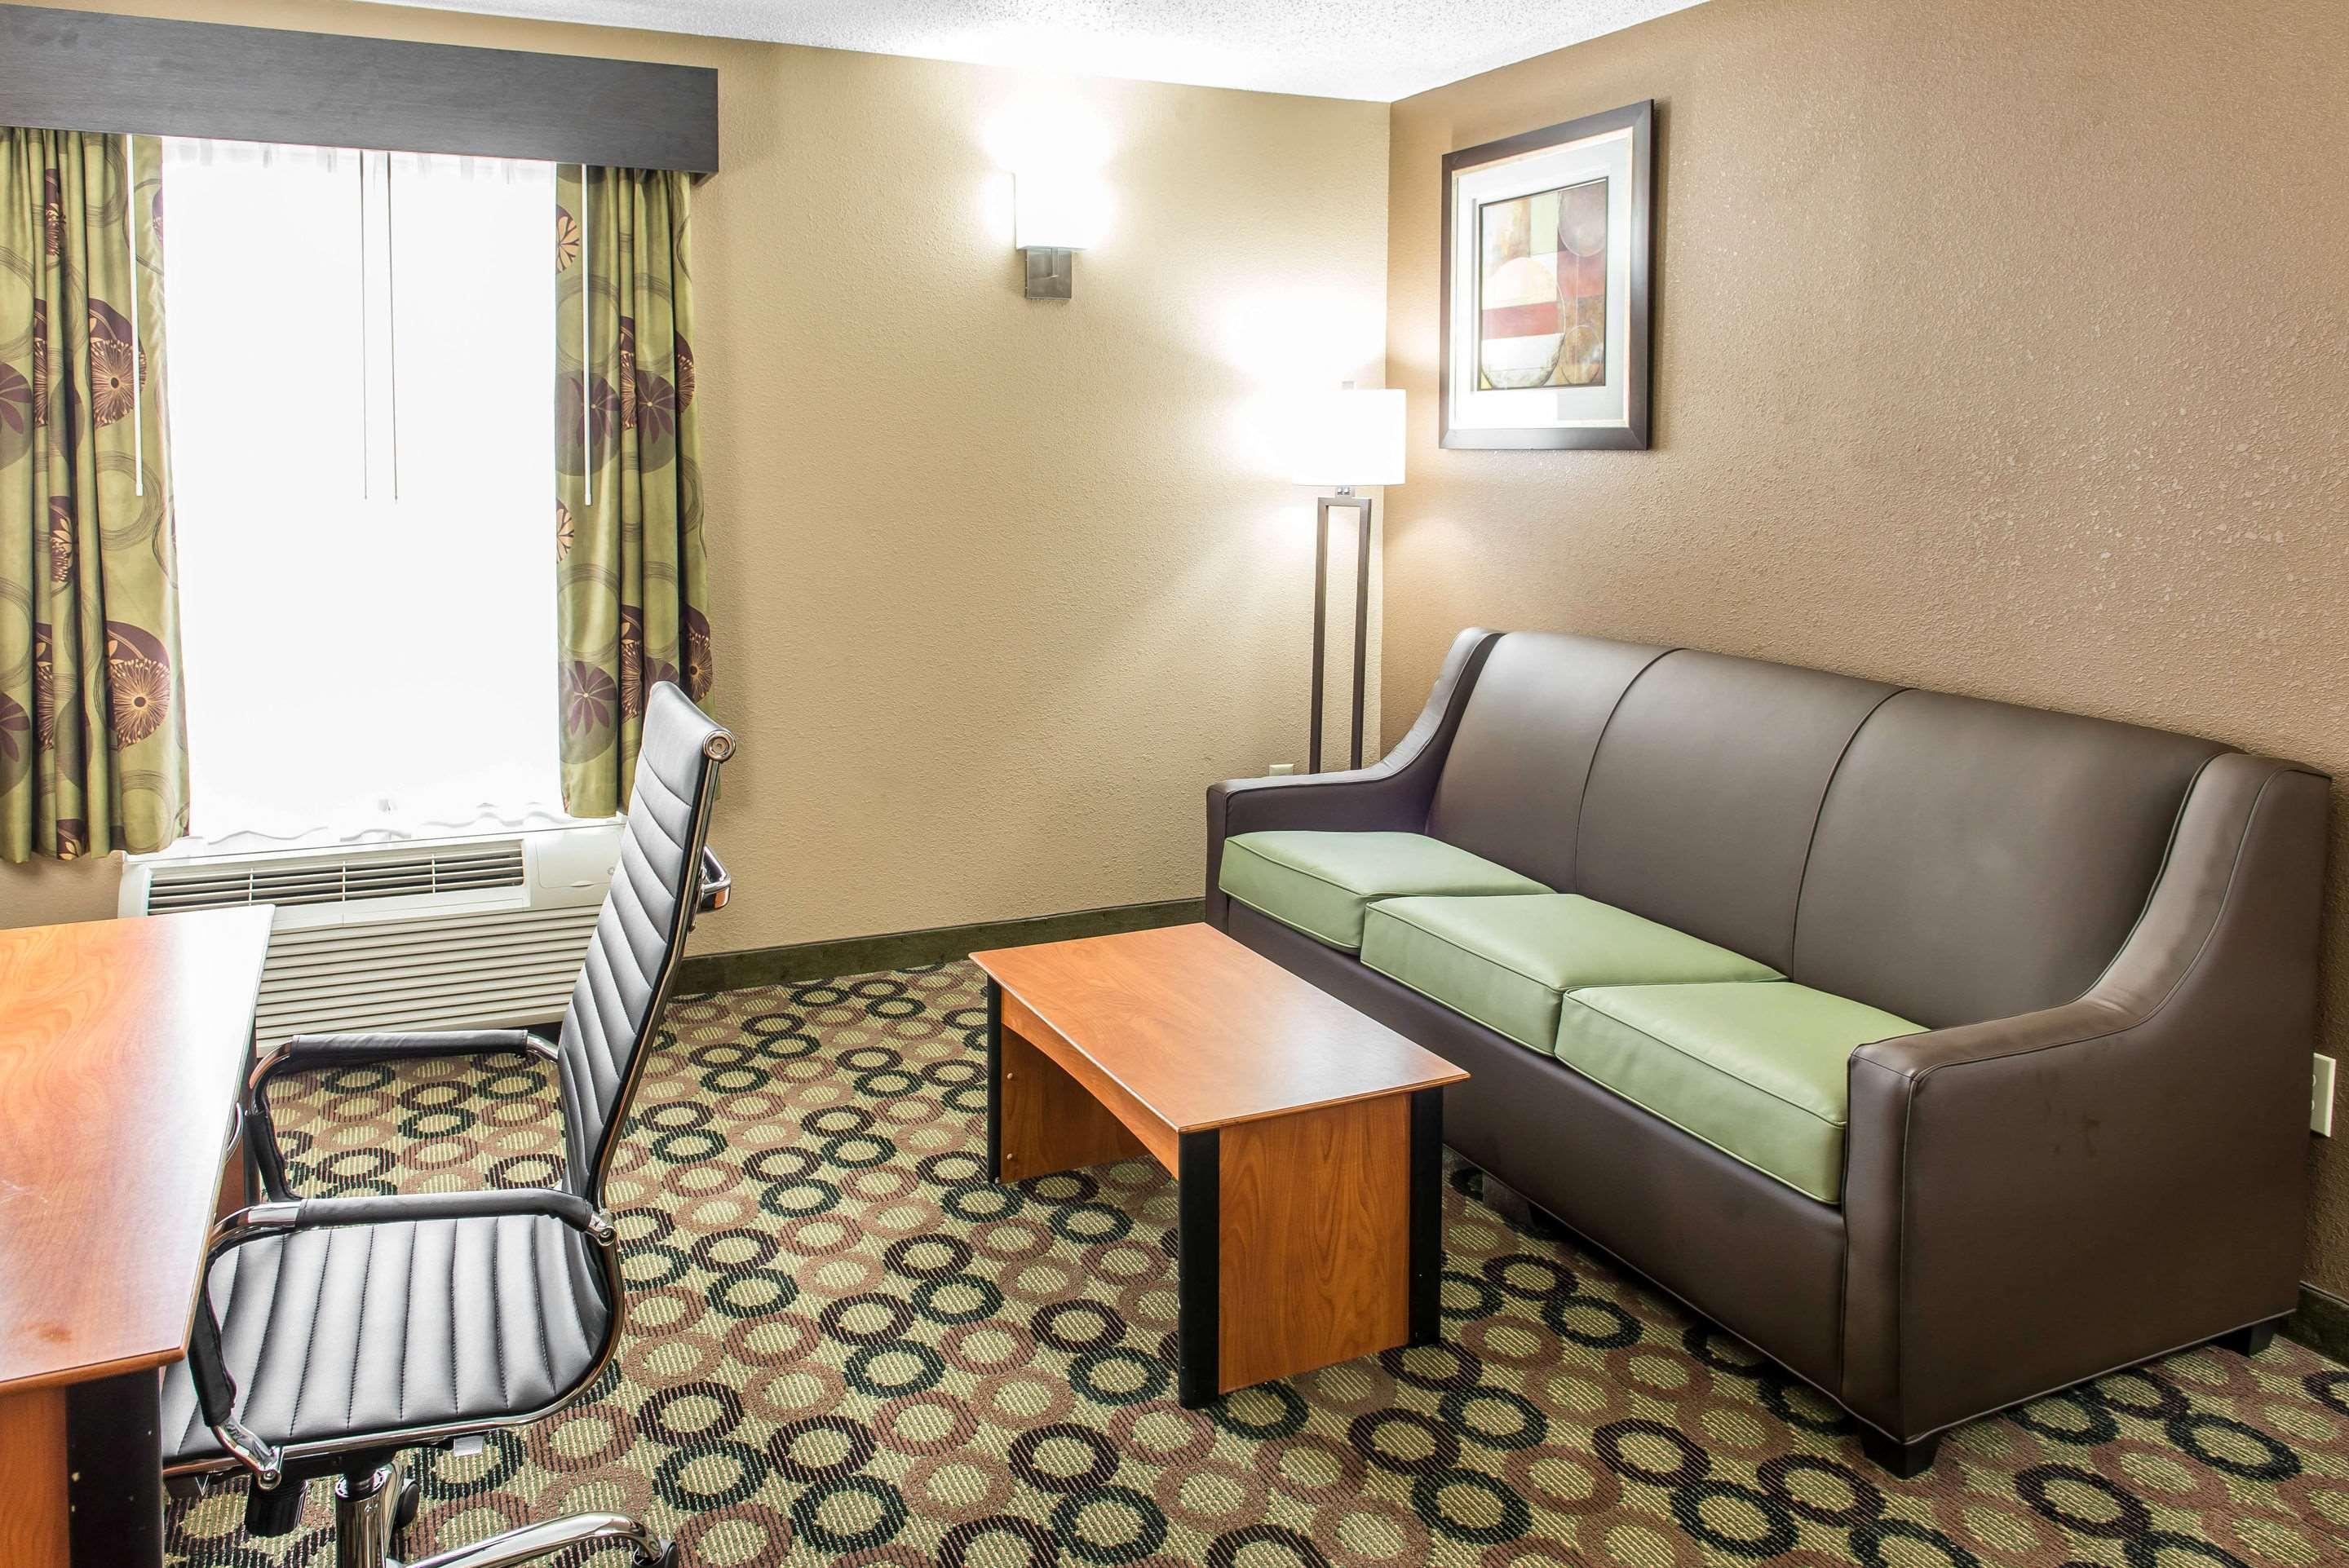 Quality Inn & Suites Columbus Zewnętrze zdjęcie